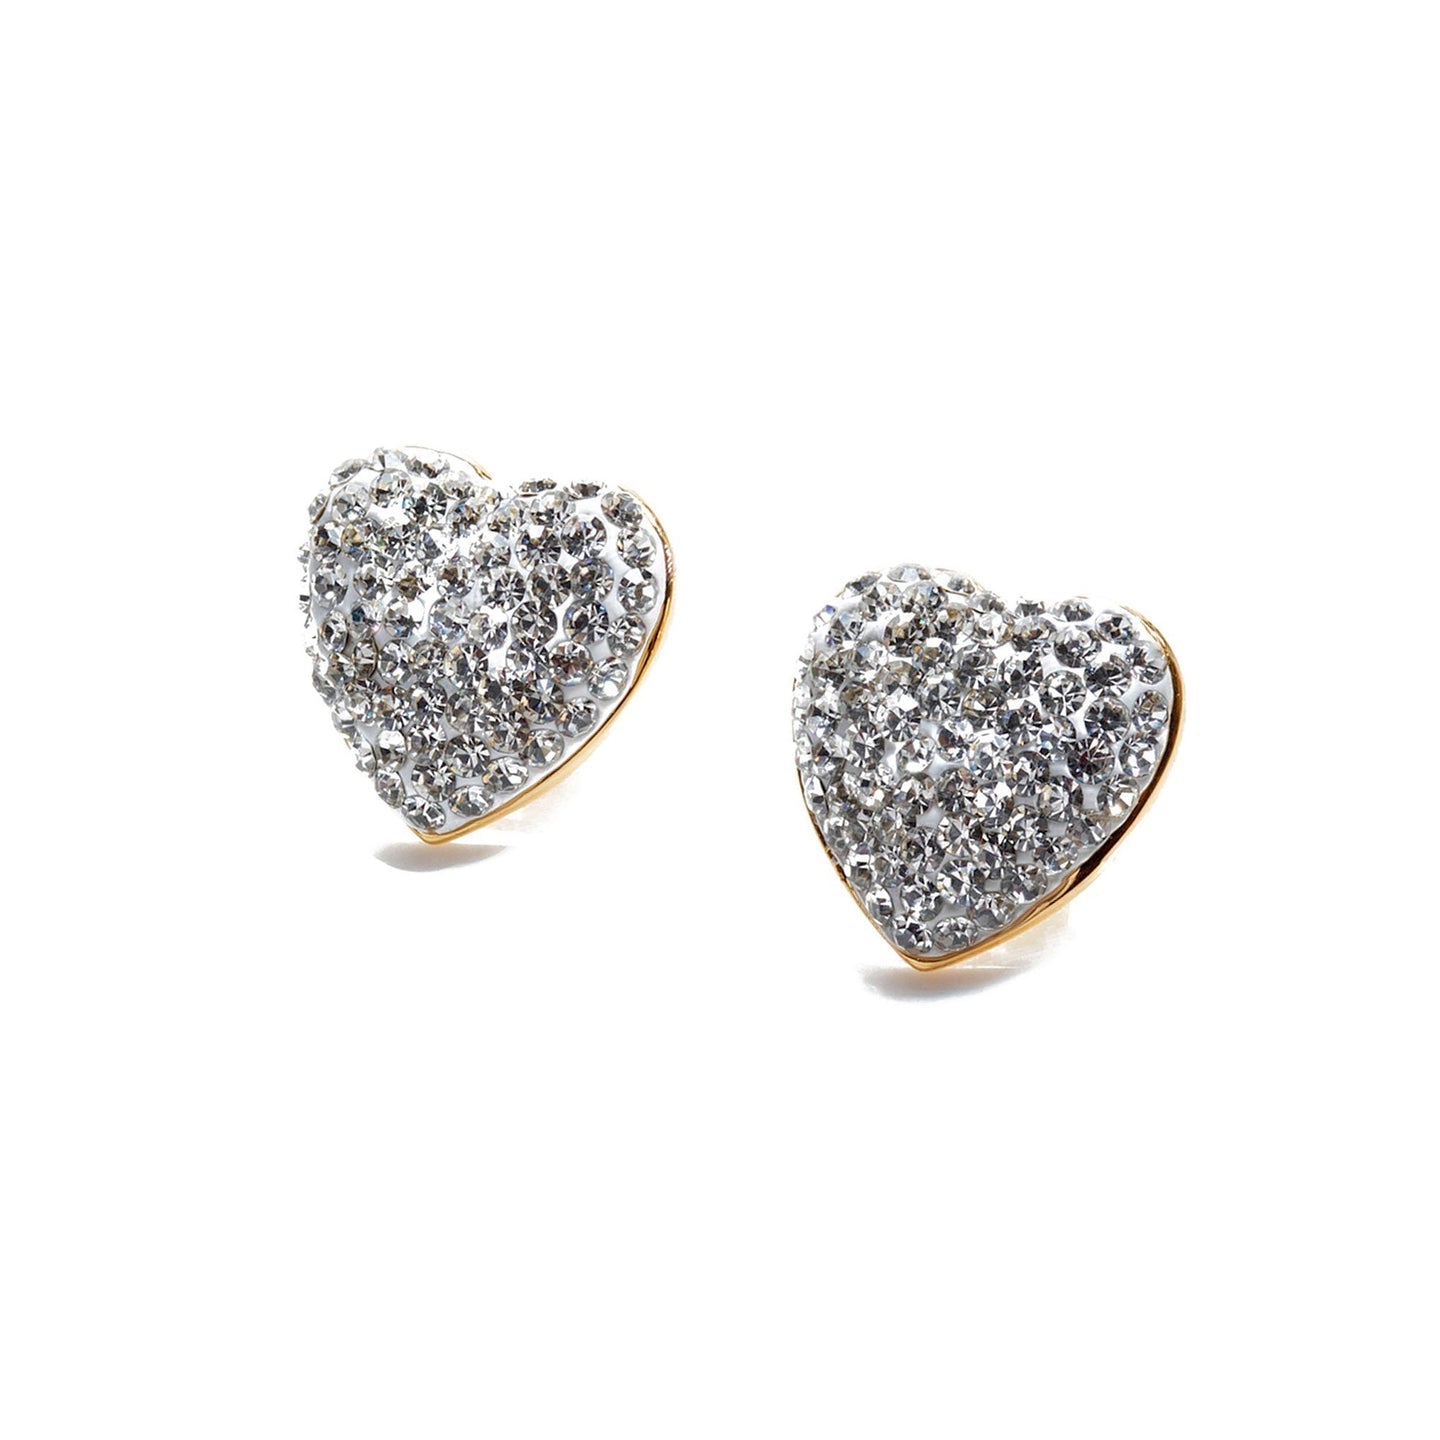 Jeweled Heart Button Earrings